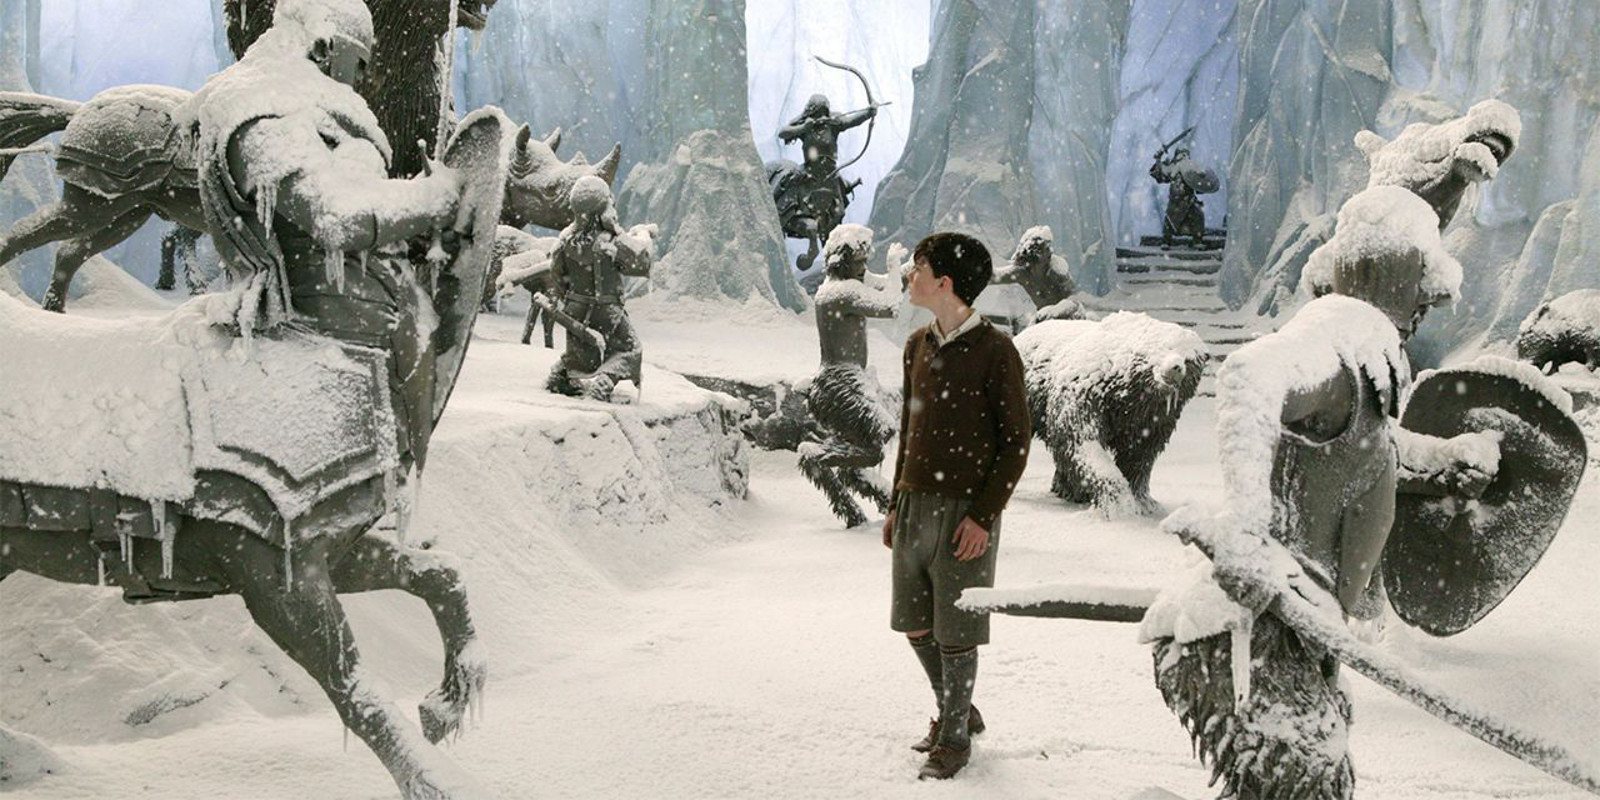 'Las crónicas de Narnia' revive gracias a nuevos proyectos de Netflix